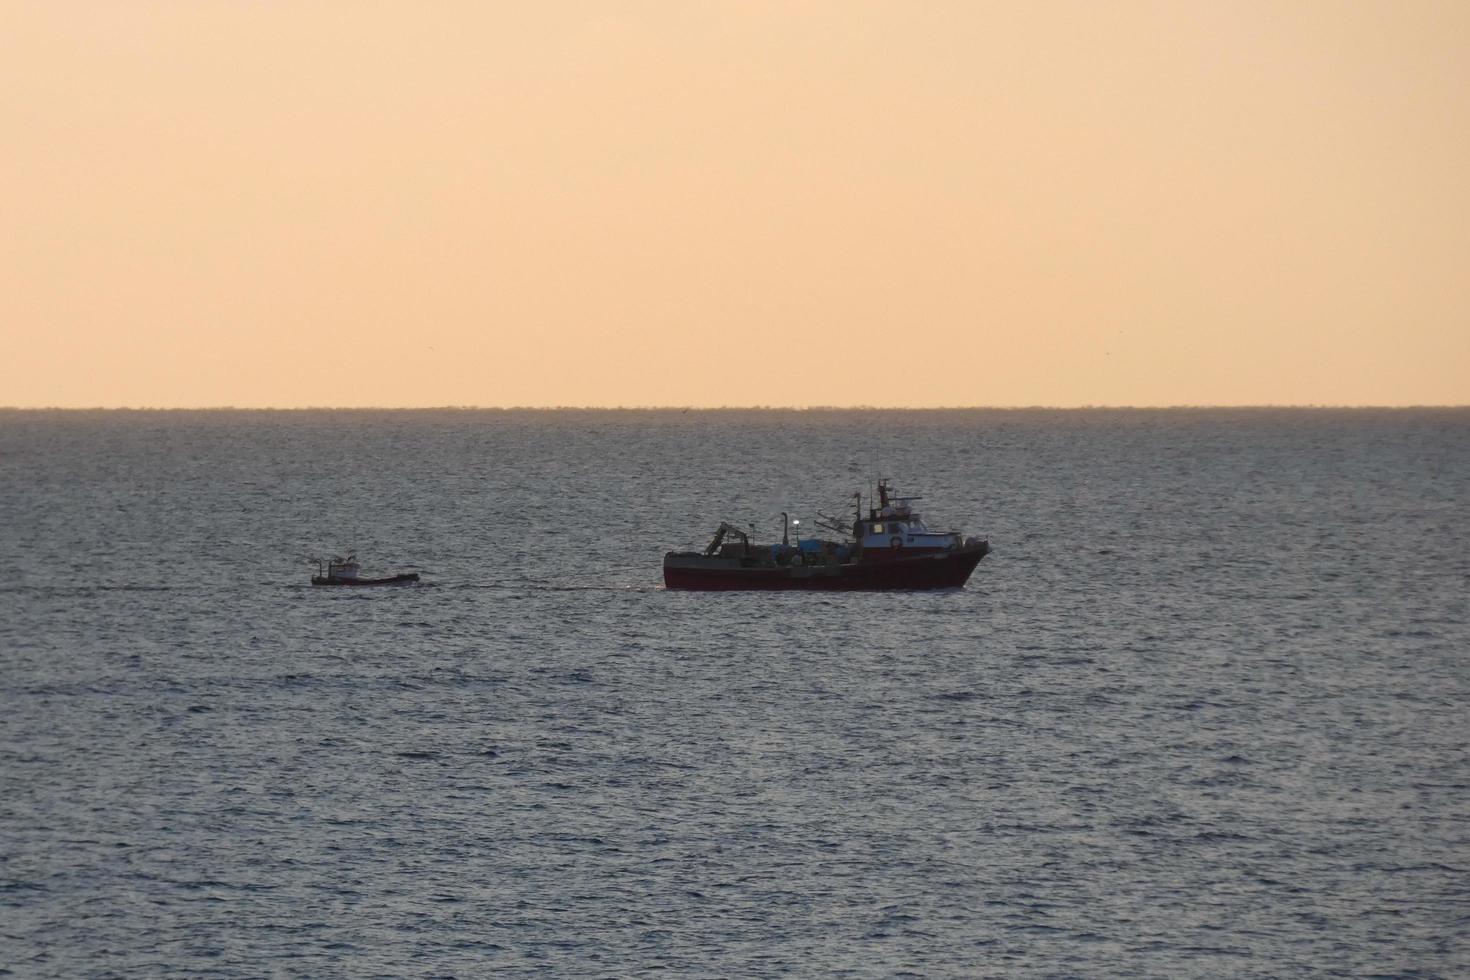 vissers terugkeren van visvangst Bij dageraad na uitgeven de geheel nacht Bij zee. foto